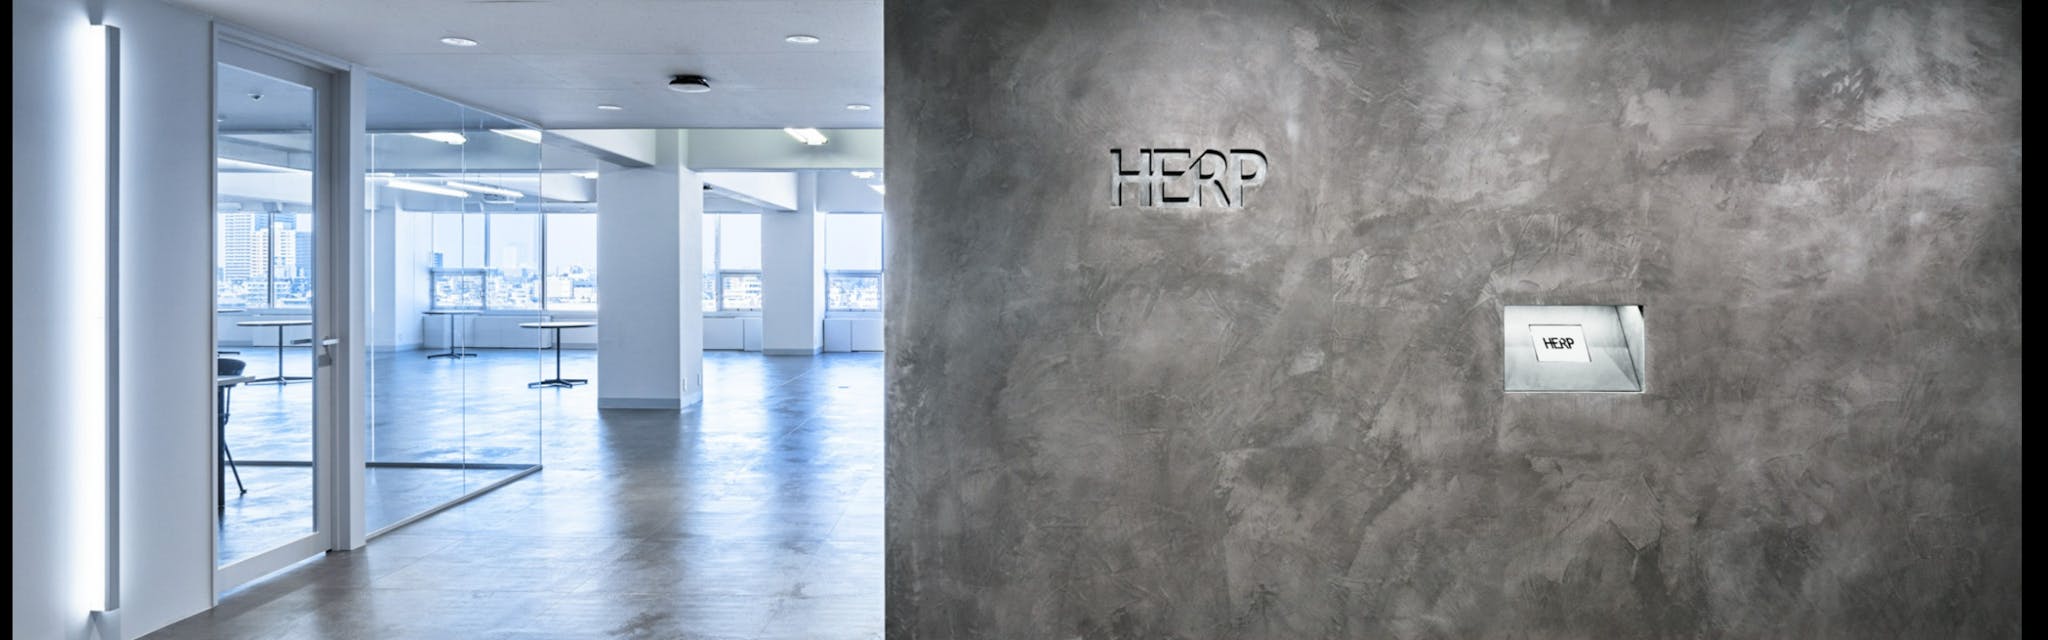 株式会社HERP - カバー画像